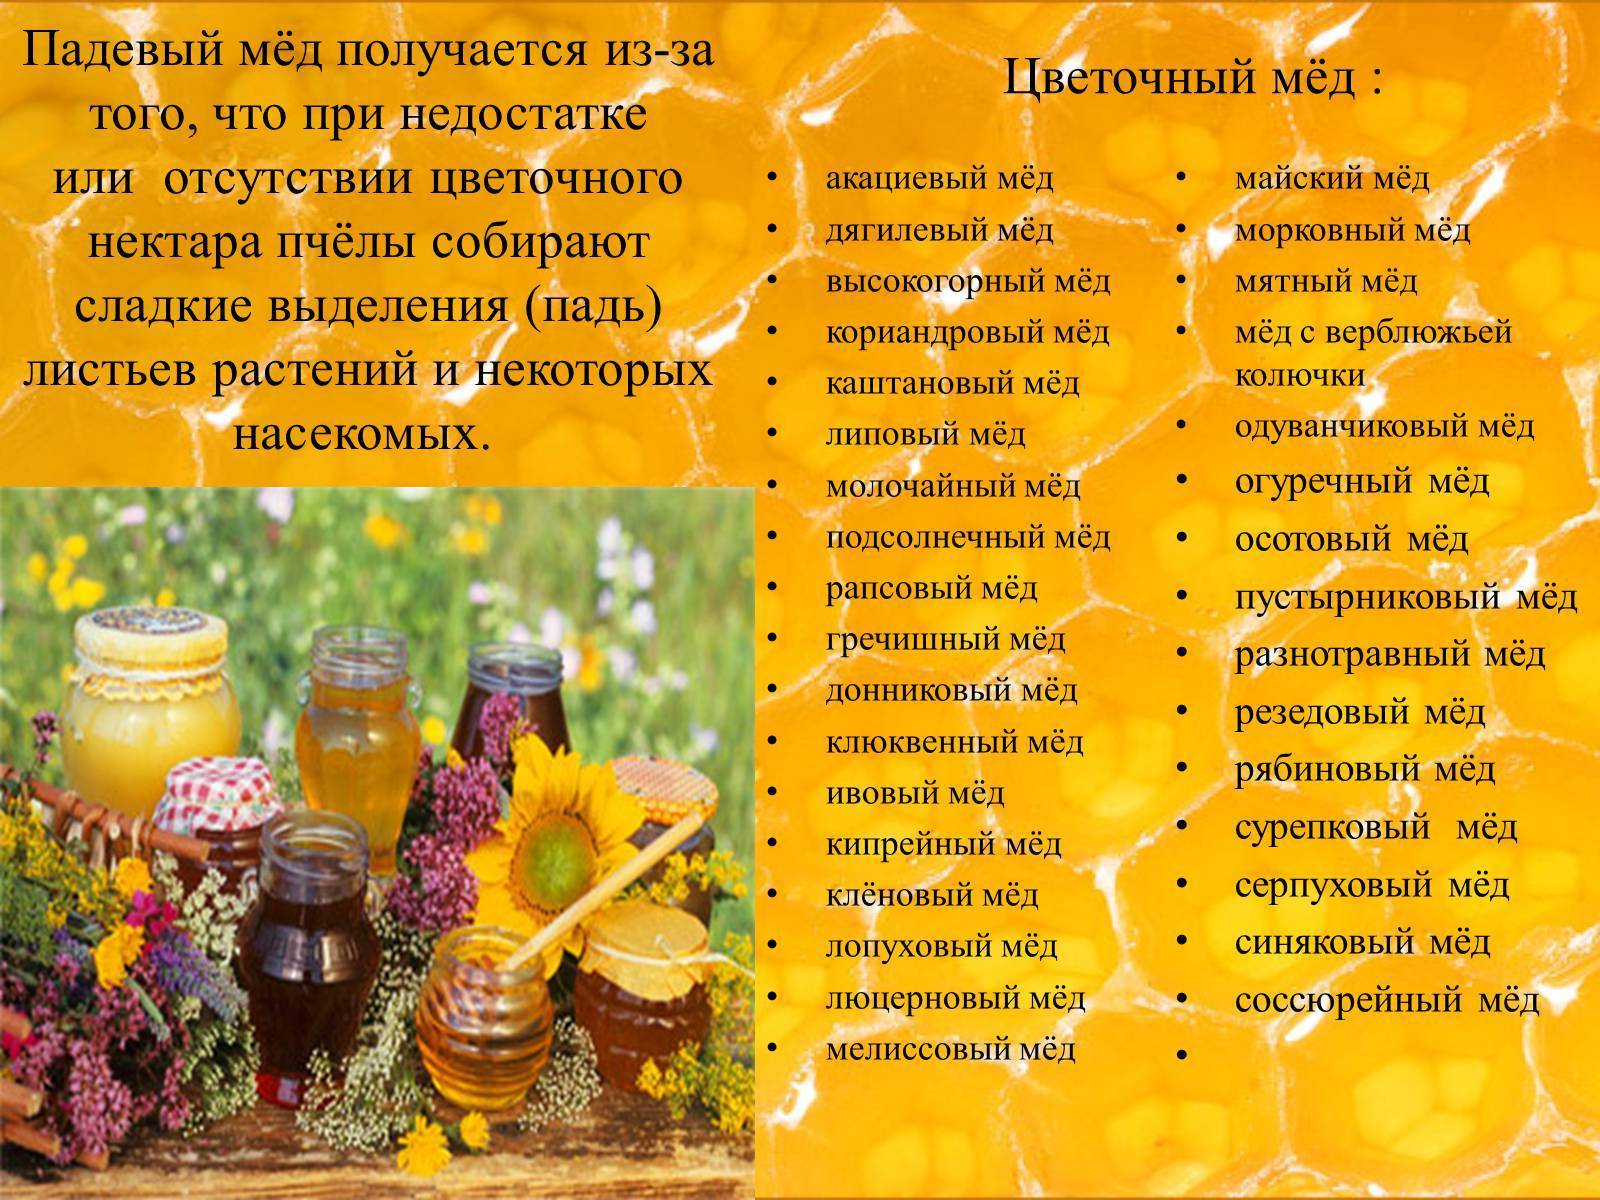 Цветочный мёд: полезные свойства и противопоказания